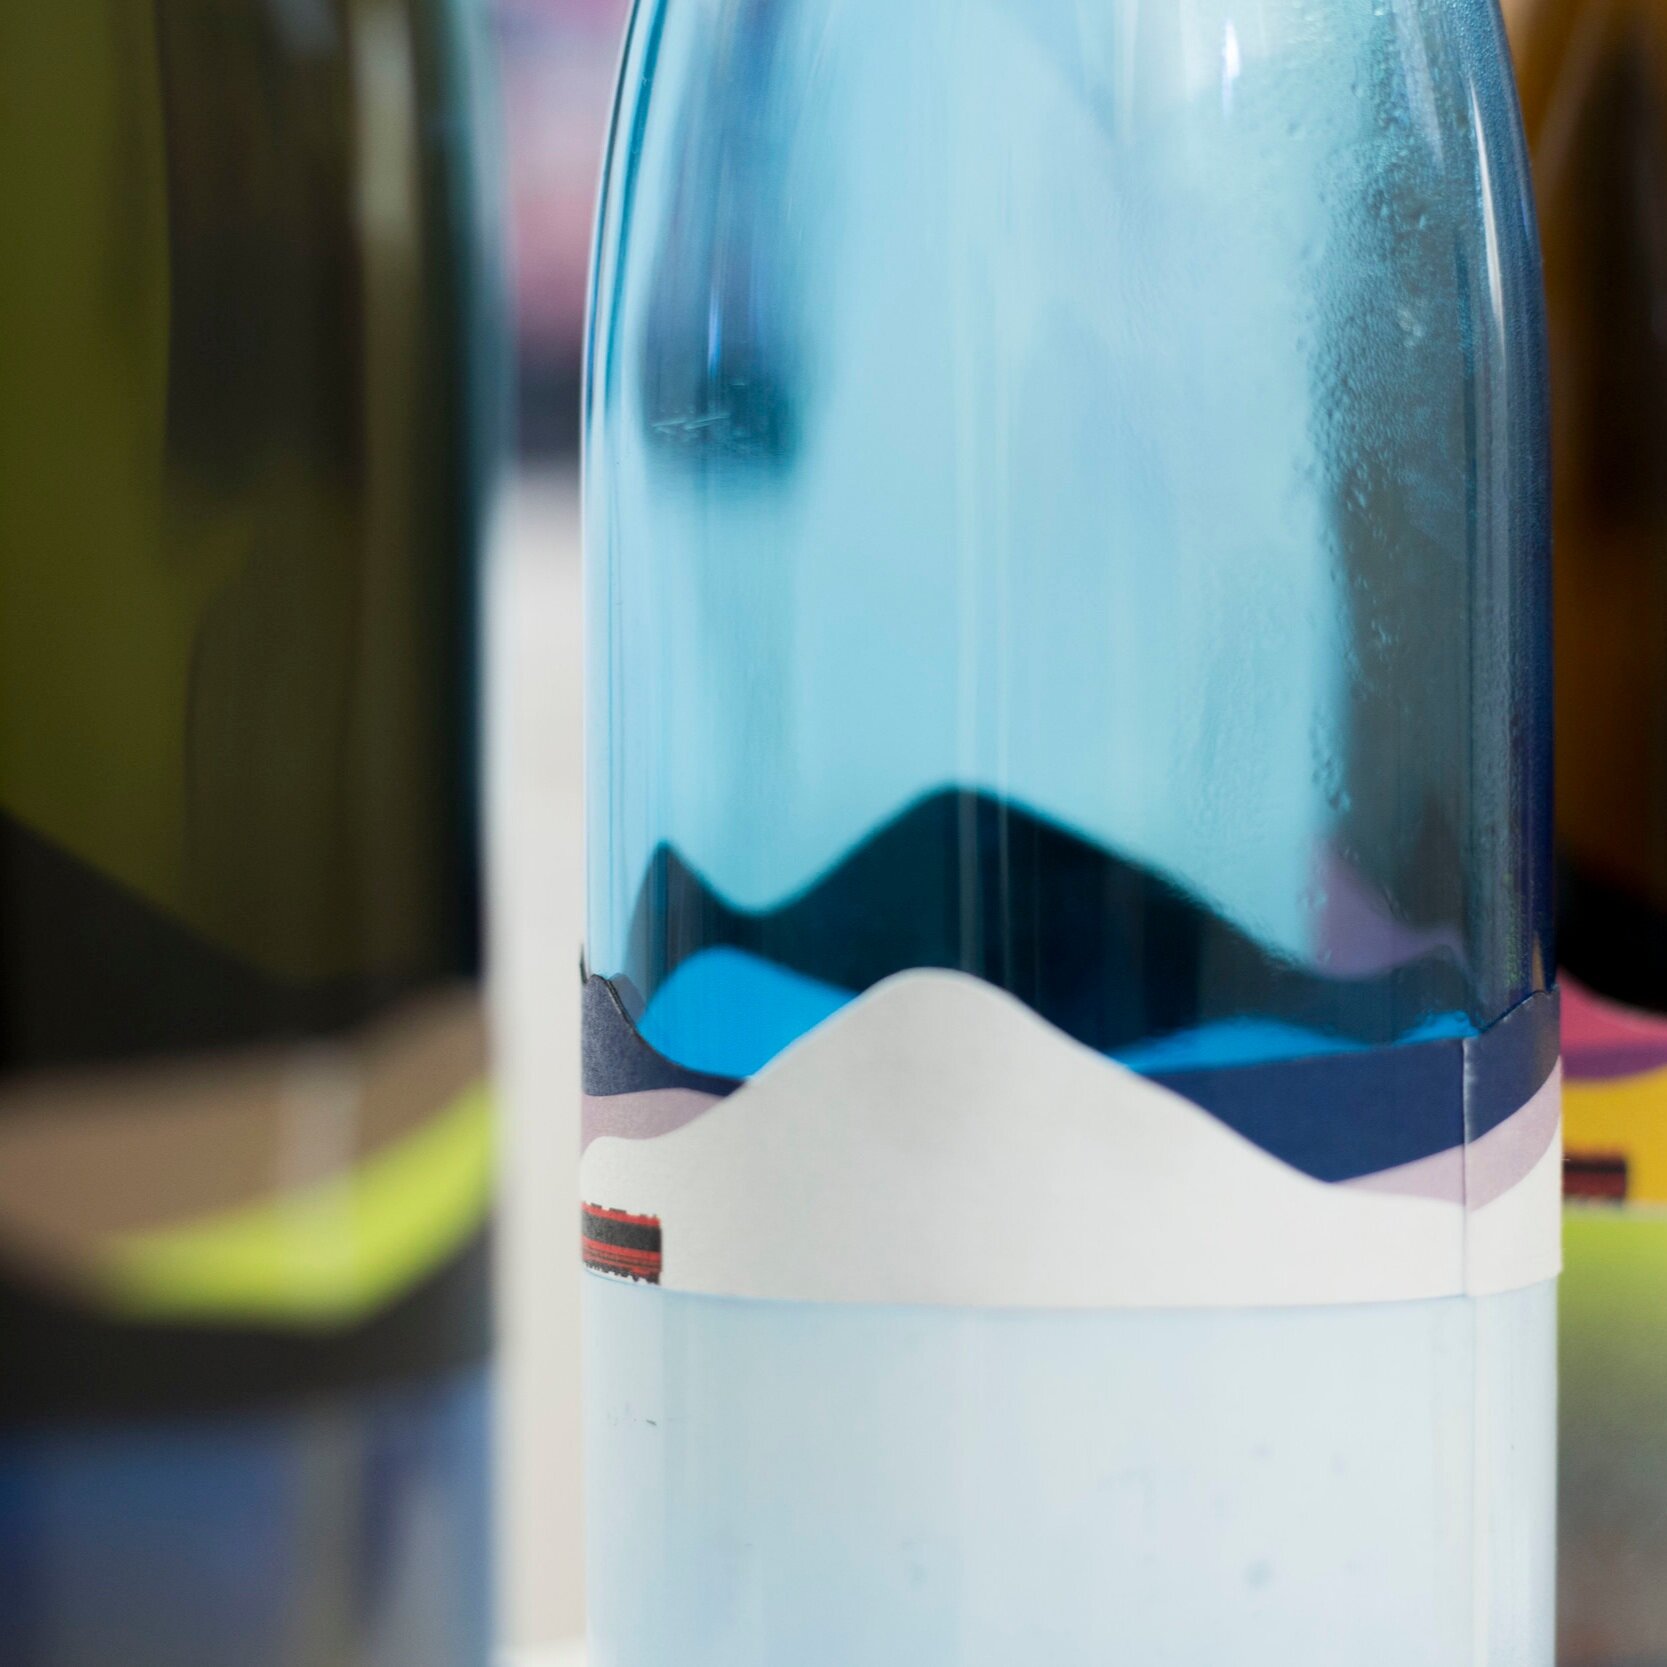 NUA: Sake Branding & Packaging